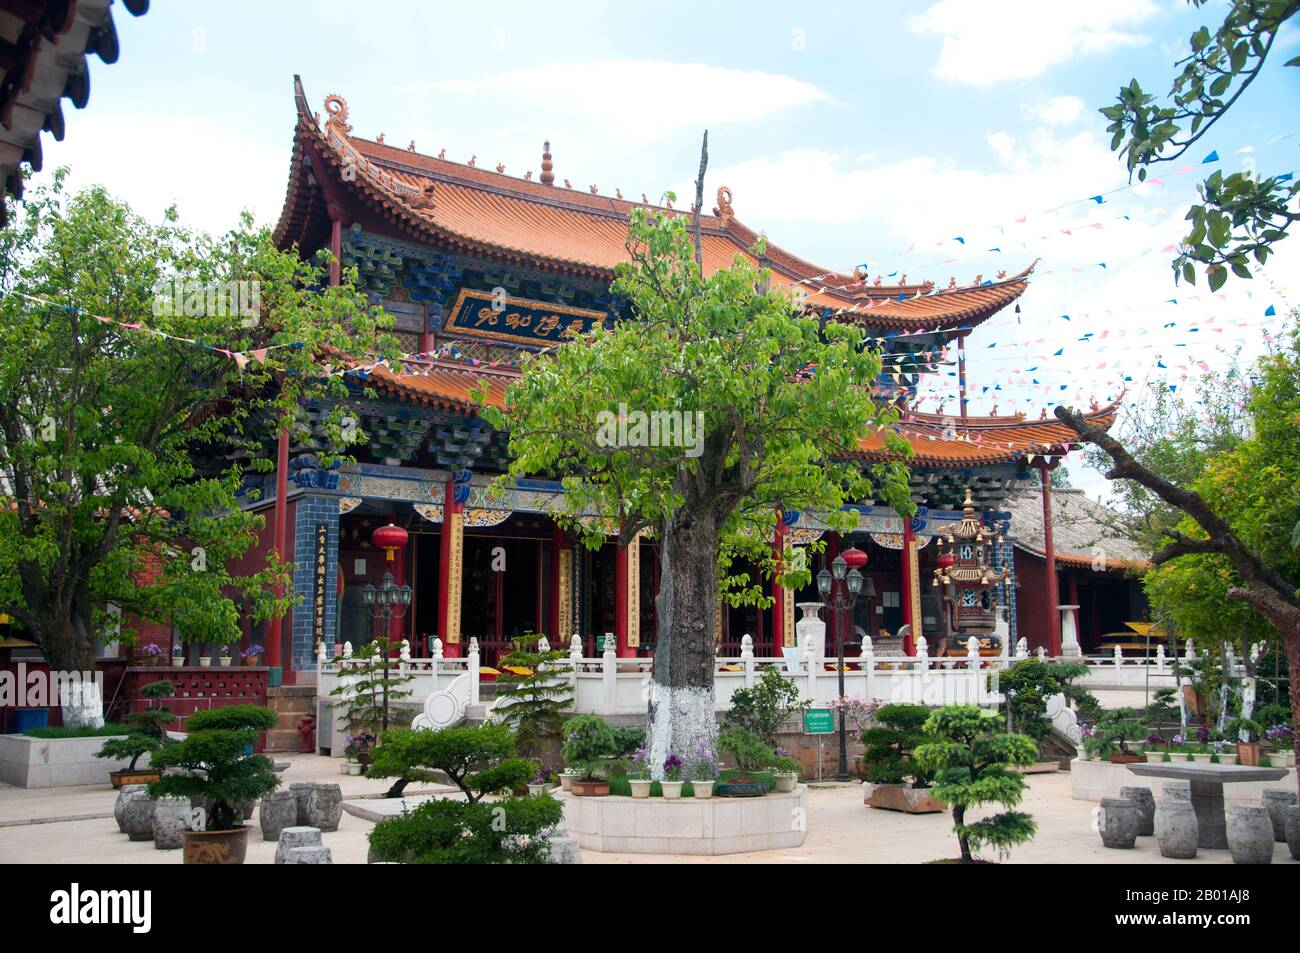 China: Qiongzhu Si (Bambustempel), nordwestlich von Kunming, Provinz Yunnan. Der Qiongzhu Si (Bambus-Tempel) wurde ursprünglich während der Tang-Dynastie (618-907) erbaut, wurde jedoch während der Yuan-Dynastie (1271-1368) als erster Tempel, der dem Zen-Buddhismus in Yunnan gewidmet war, ordnungsgemäß errichtet. Der Tempel ist berühmt für seine 500 bemalten Arhats, die während der Herrschaft des Qing-Imperators Guangxu (1875-1909) vom Bildhauer Li Guangxiu geschaffen wurden. Stockfoto